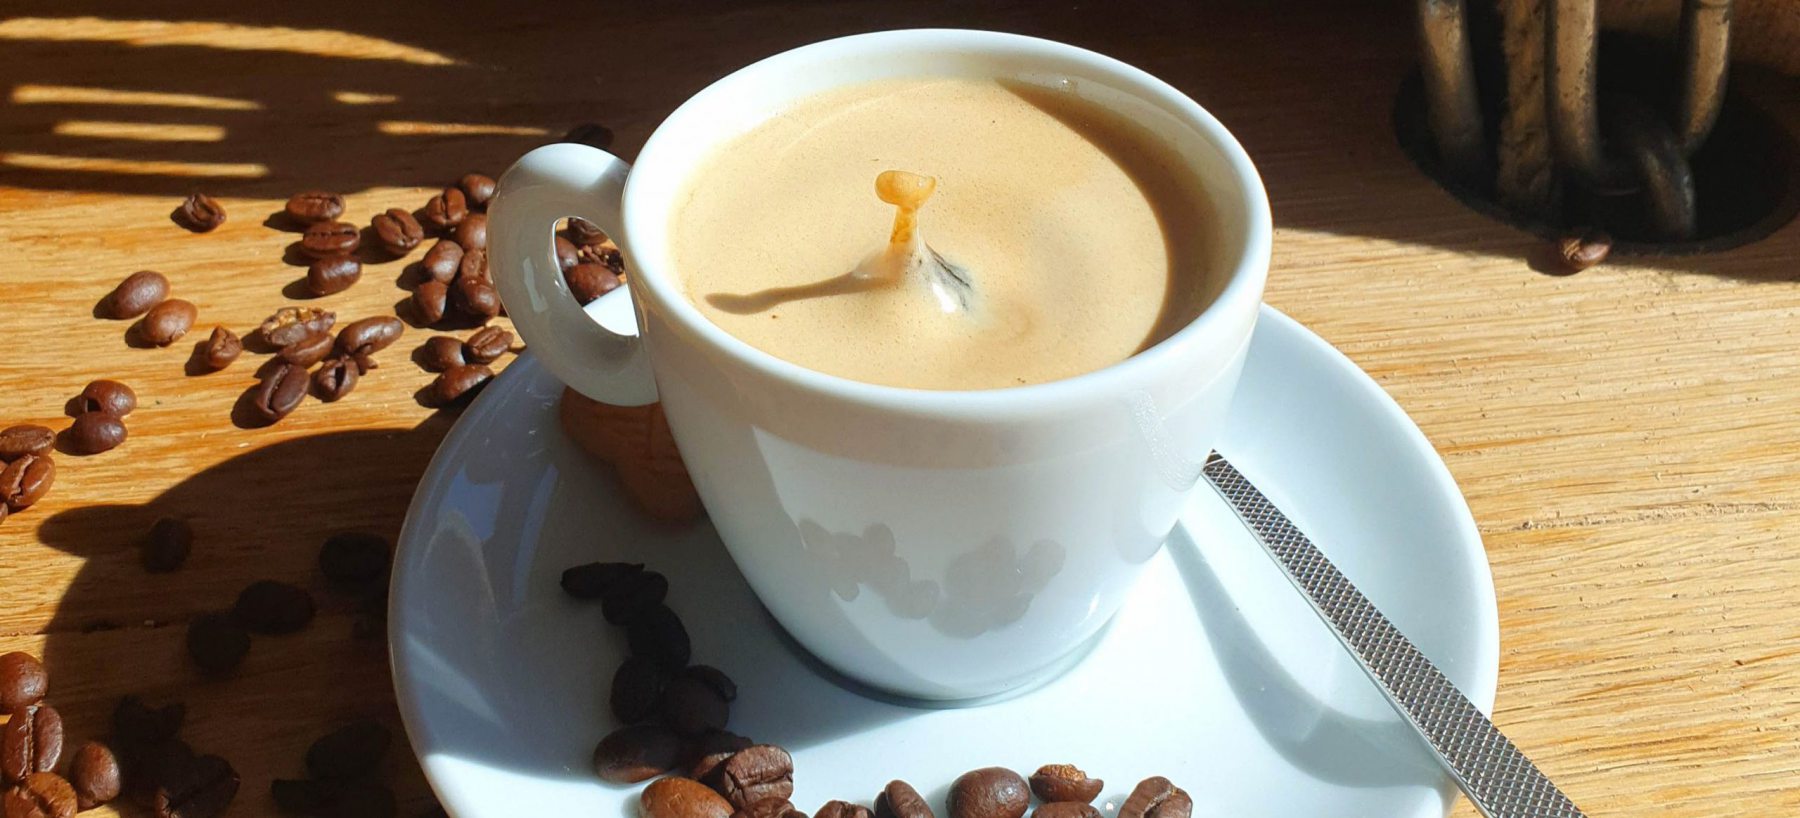 Bild einer Kaffeetasse